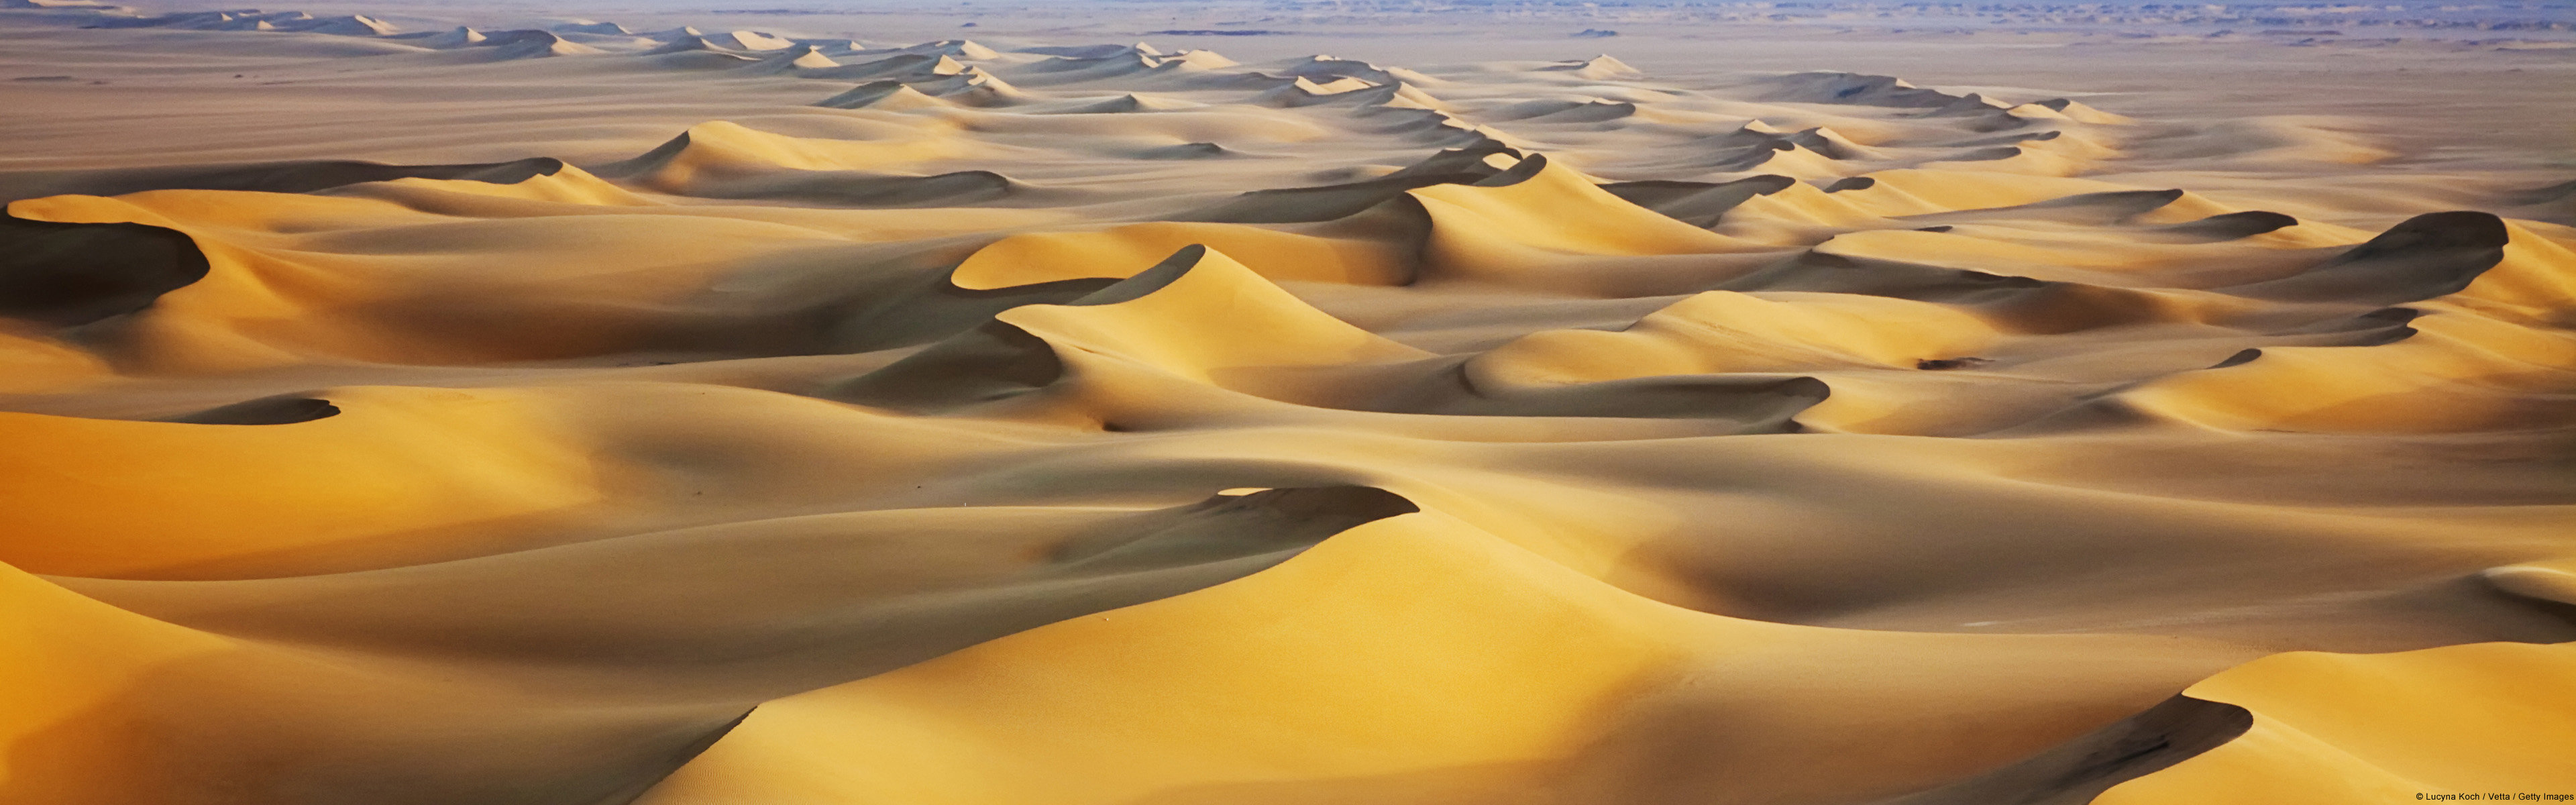 Free Download Desert Wallpaper Id - Desert Sand Most Beautiful - HD Wallpaper 